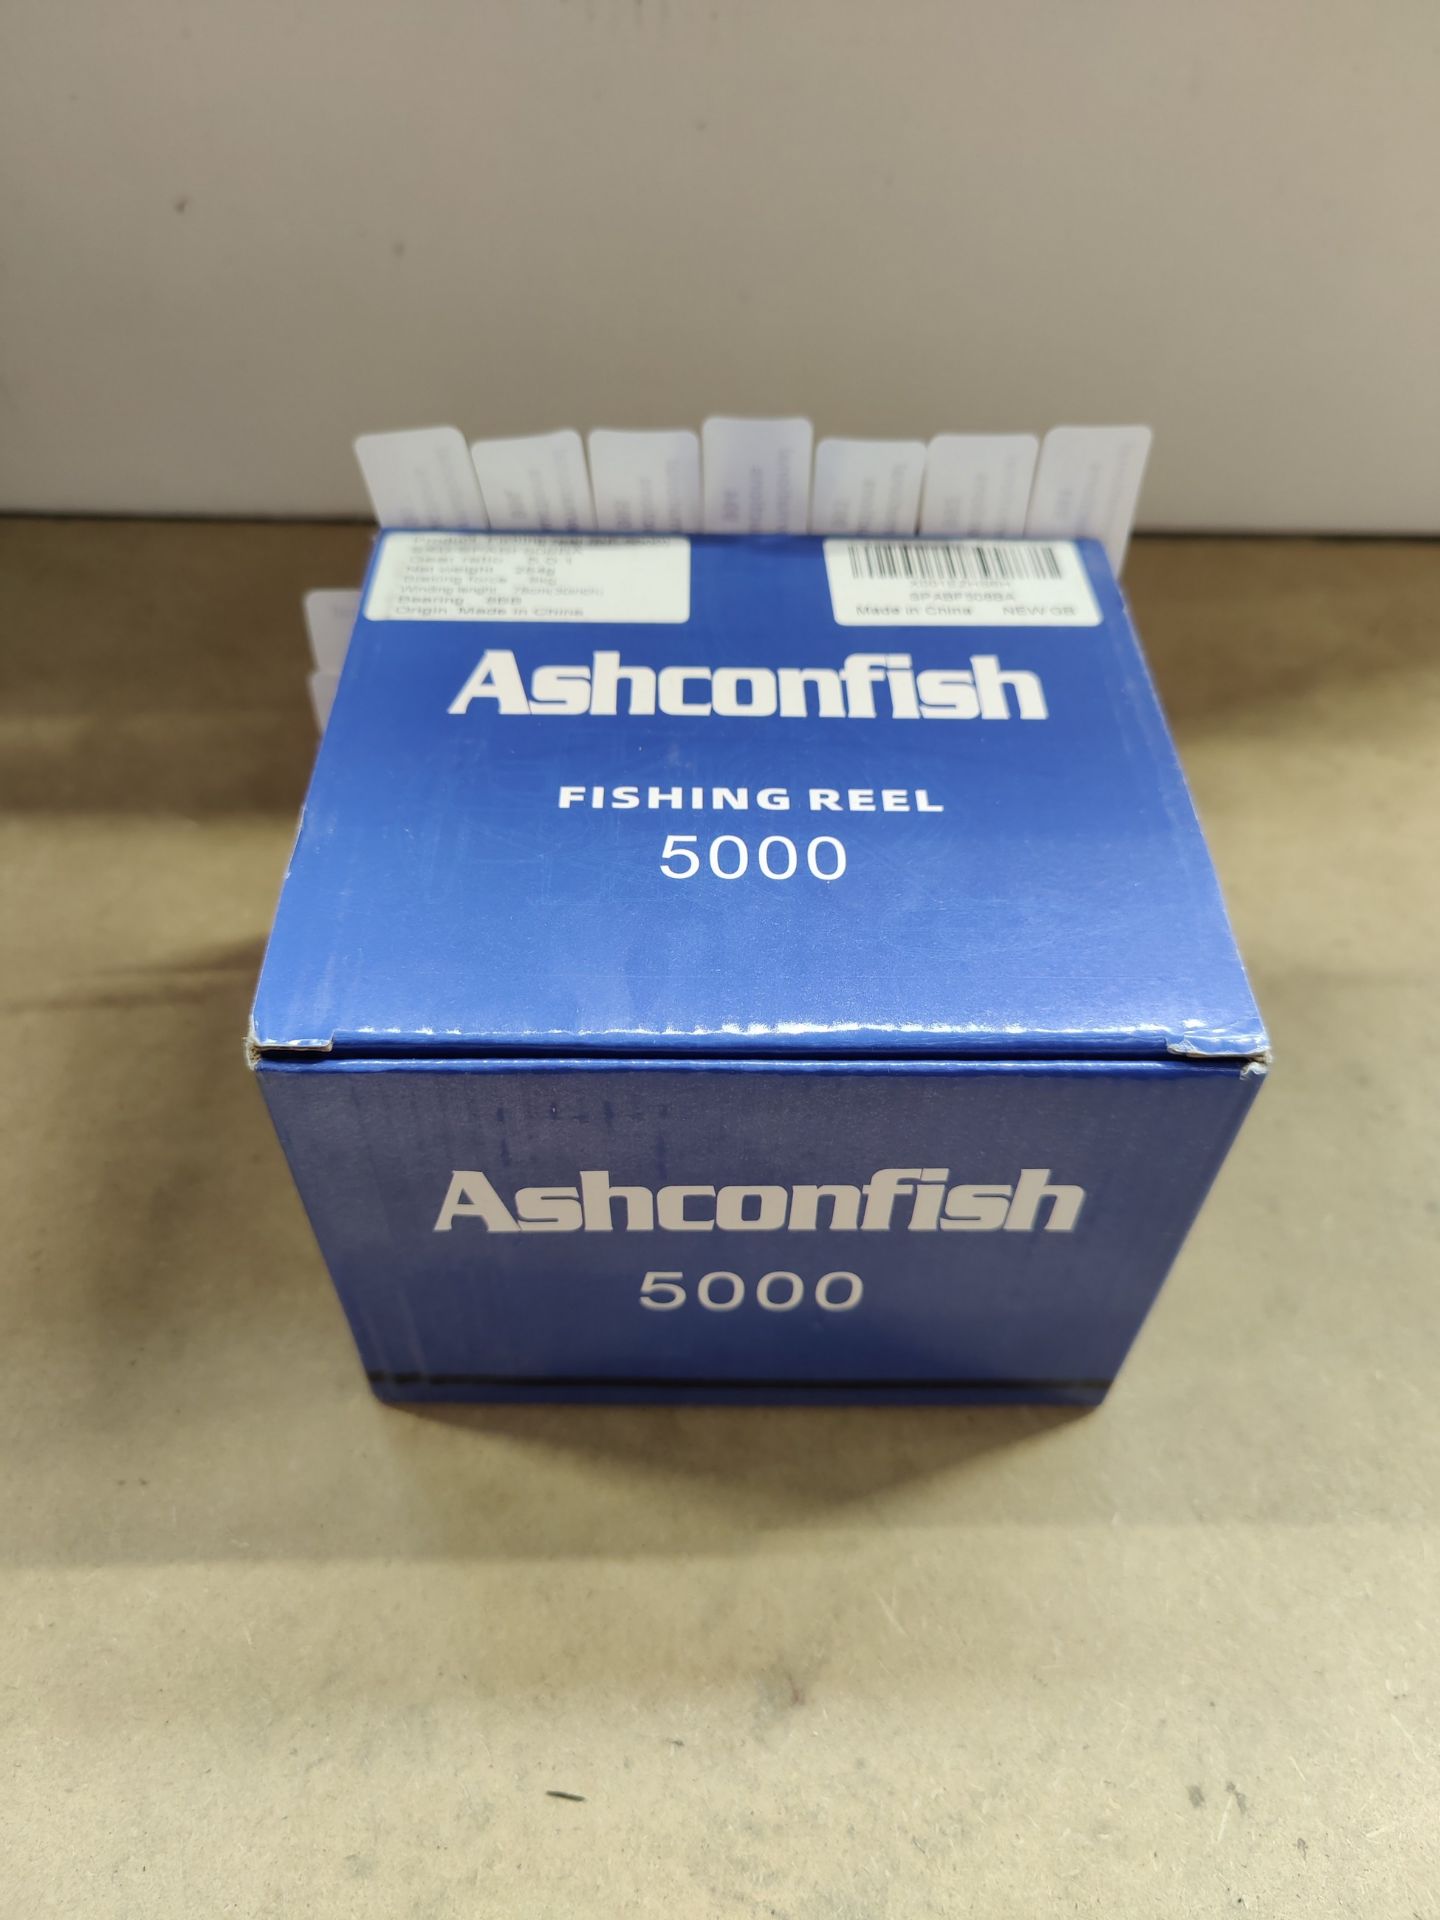 RRP £33.13 Ashconfish Fishing Reel - Image 2 of 2